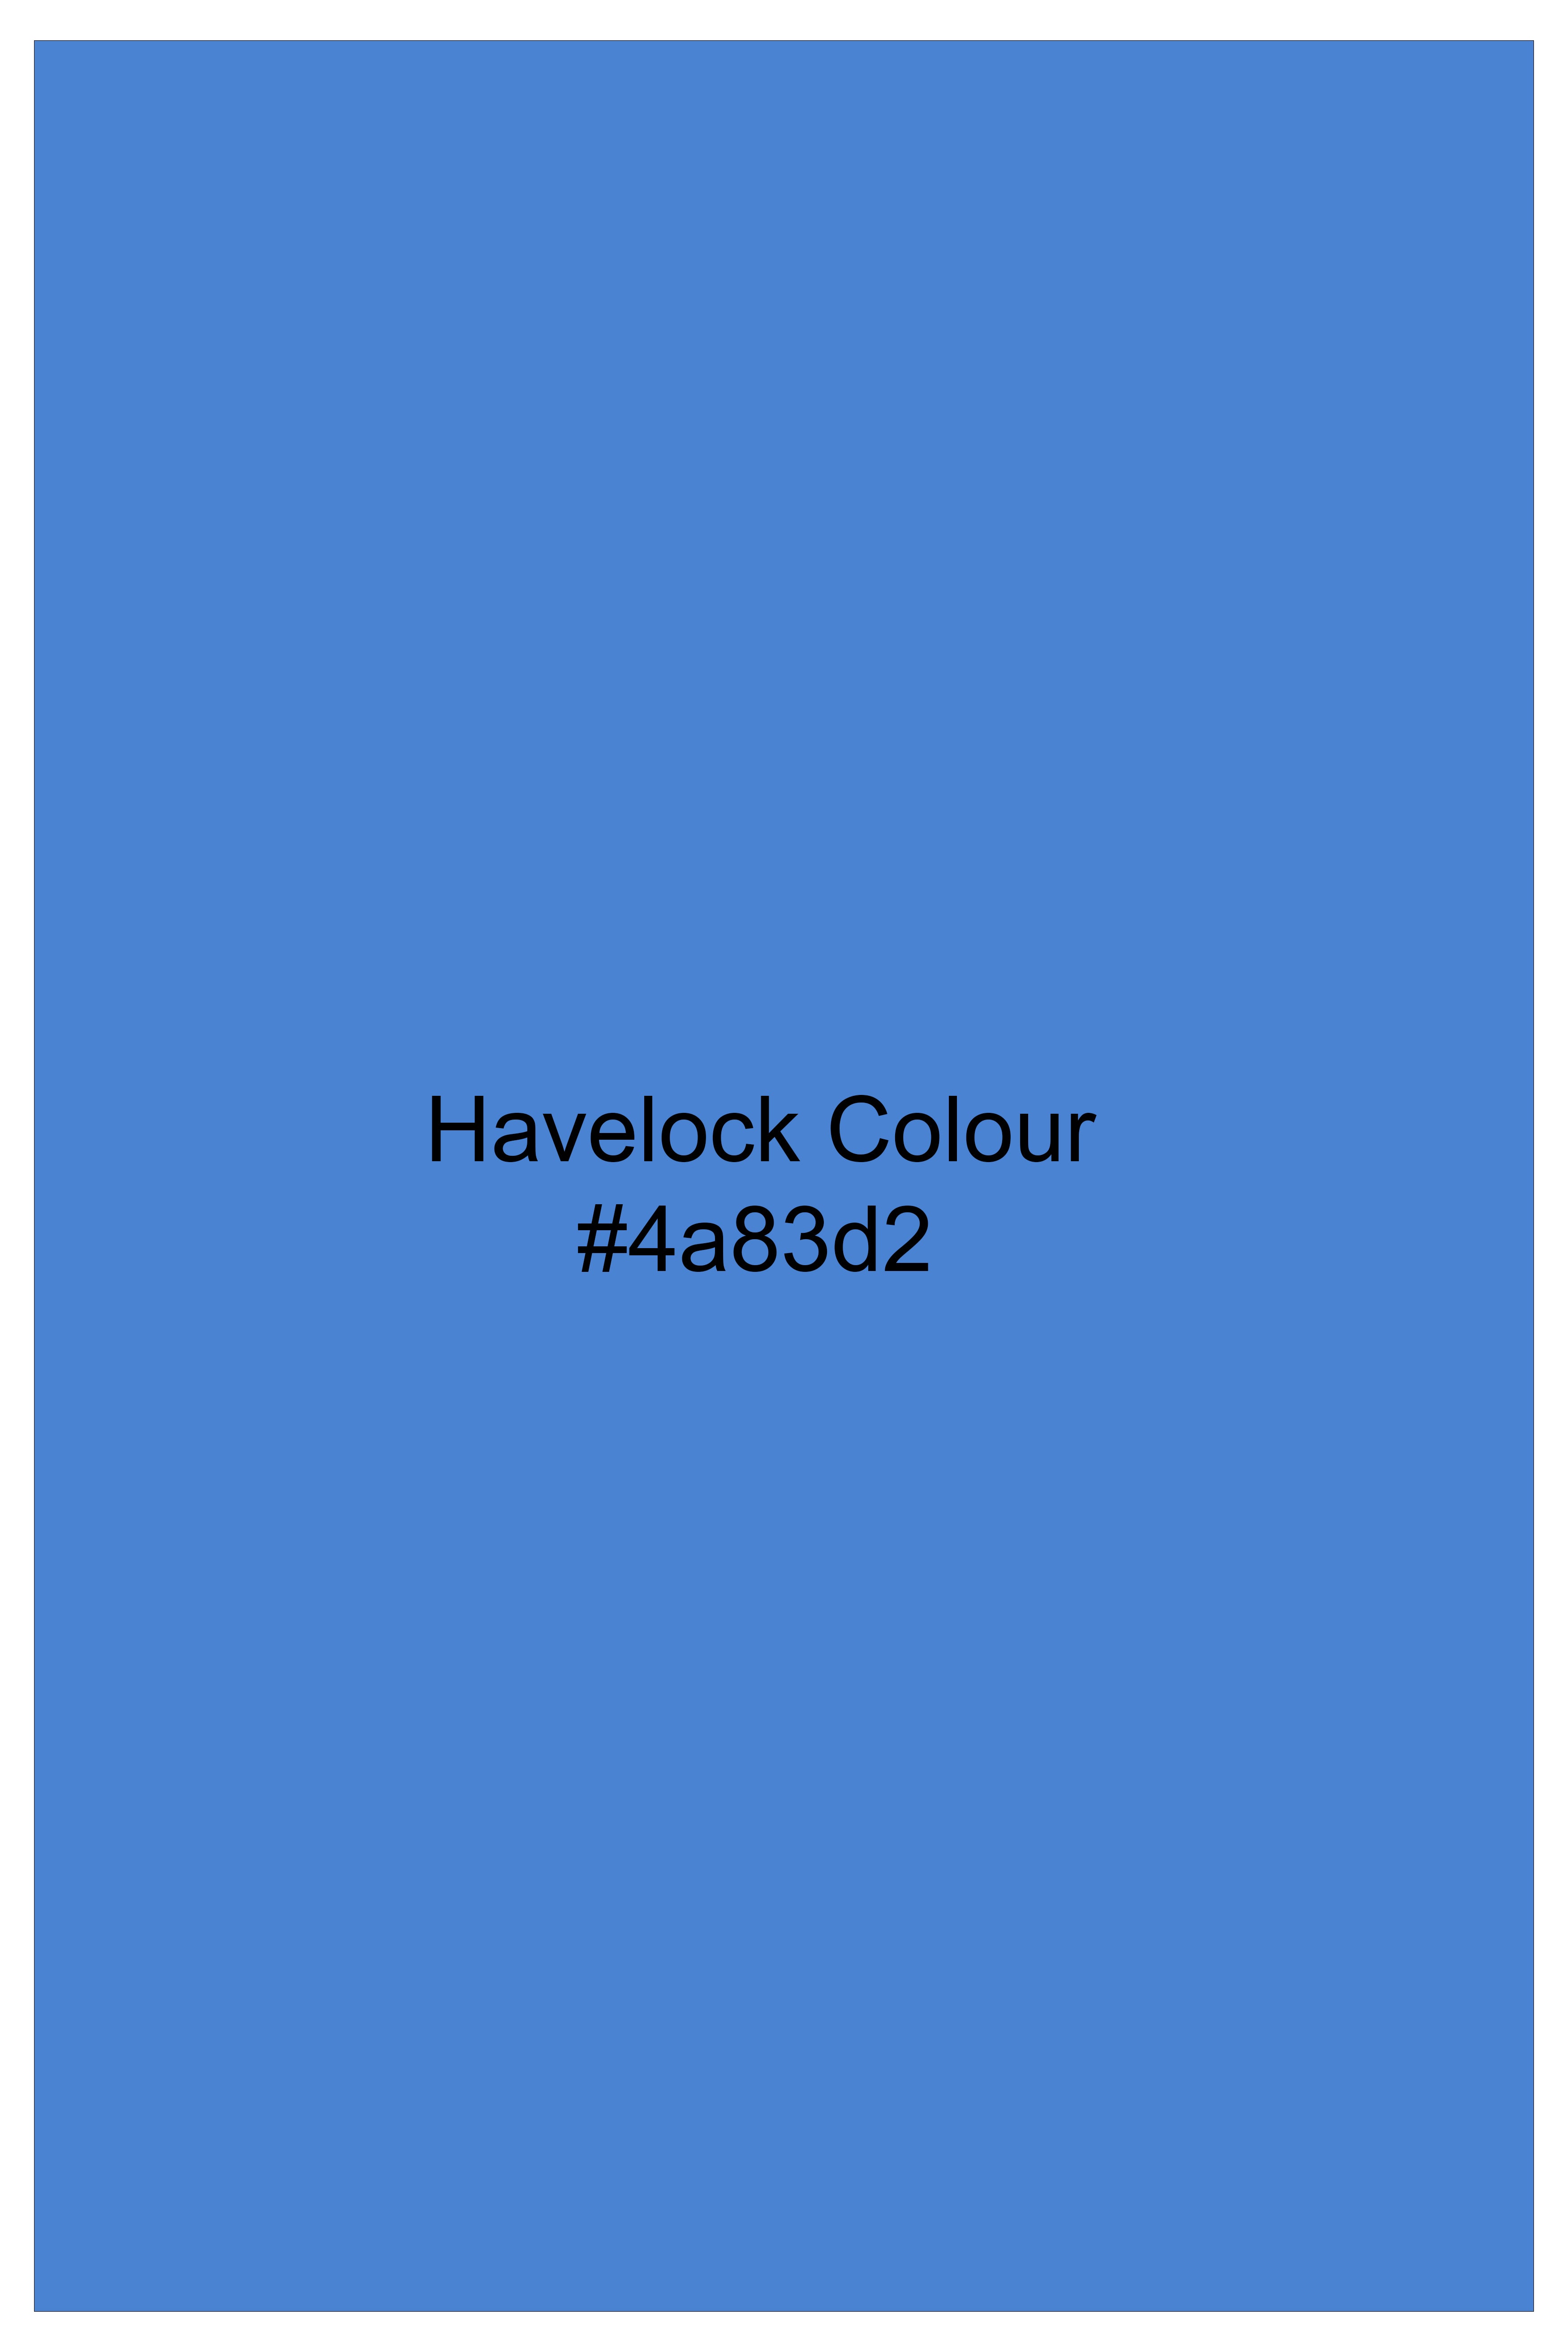 Havelock Blue Solid Subtle Sheen Super Soft Premium Cotton Boxer